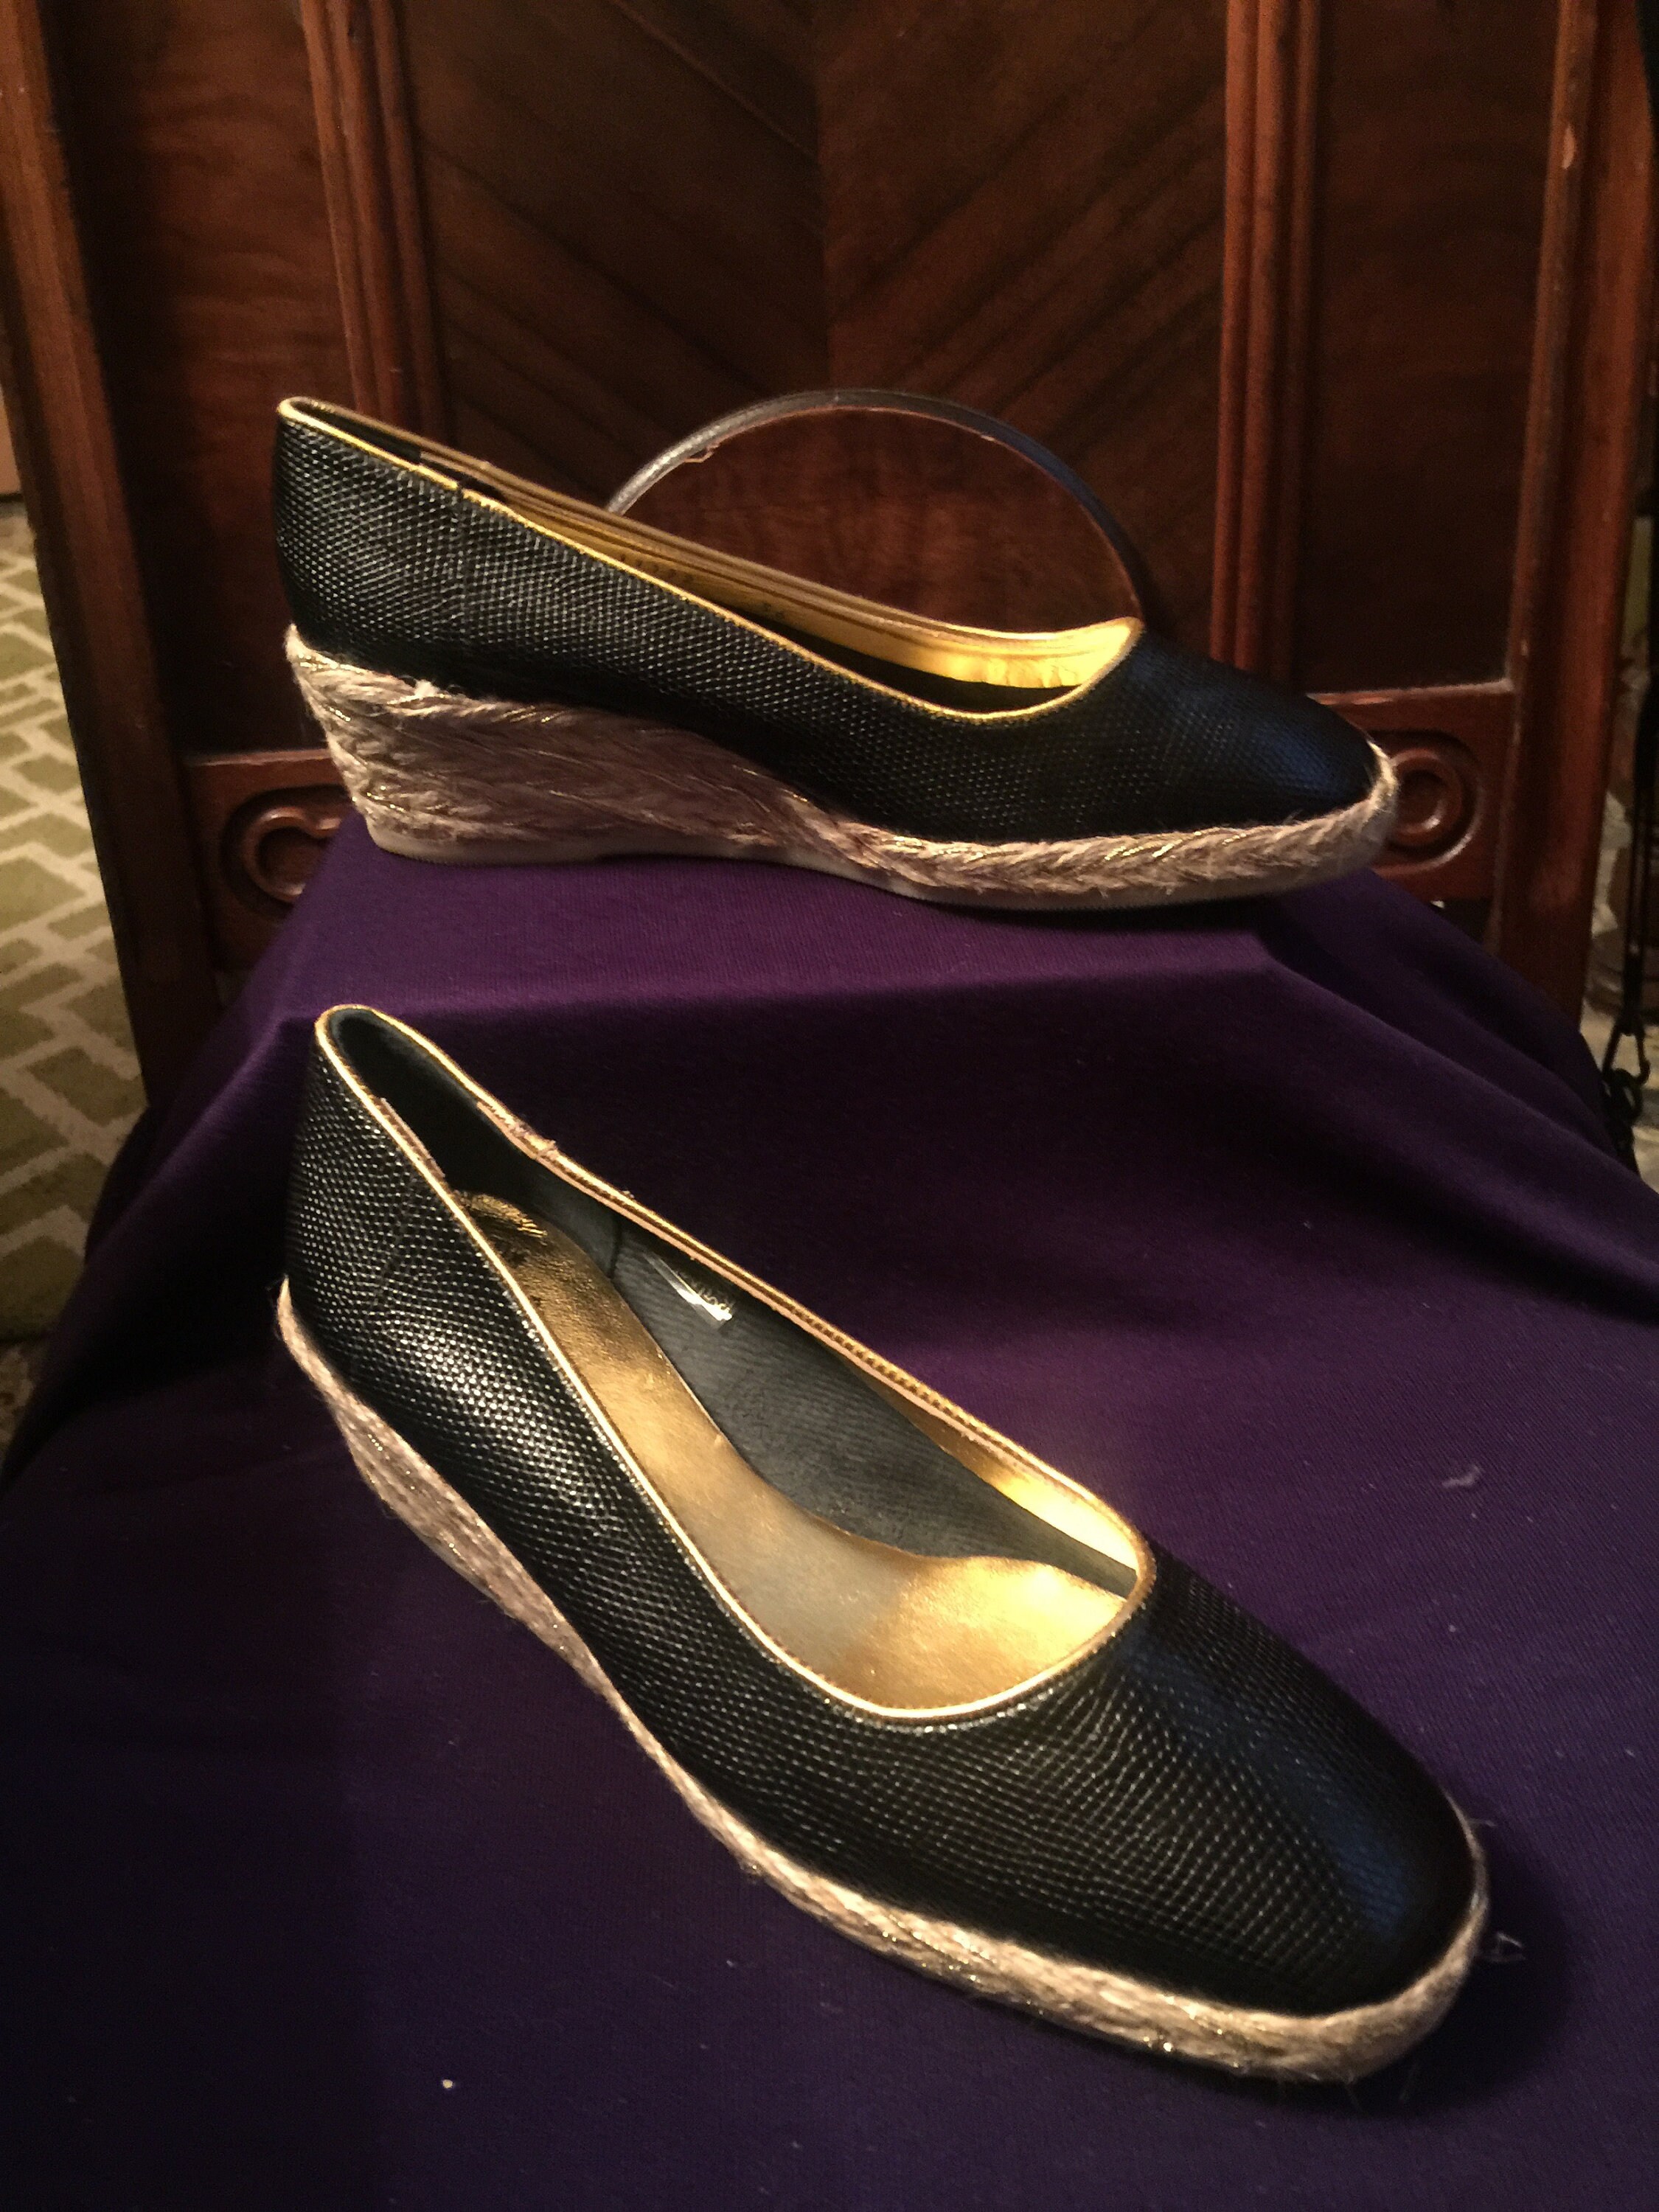 Yves Saint Laurent Leather Espadrilles - Gold Flats, Shoes